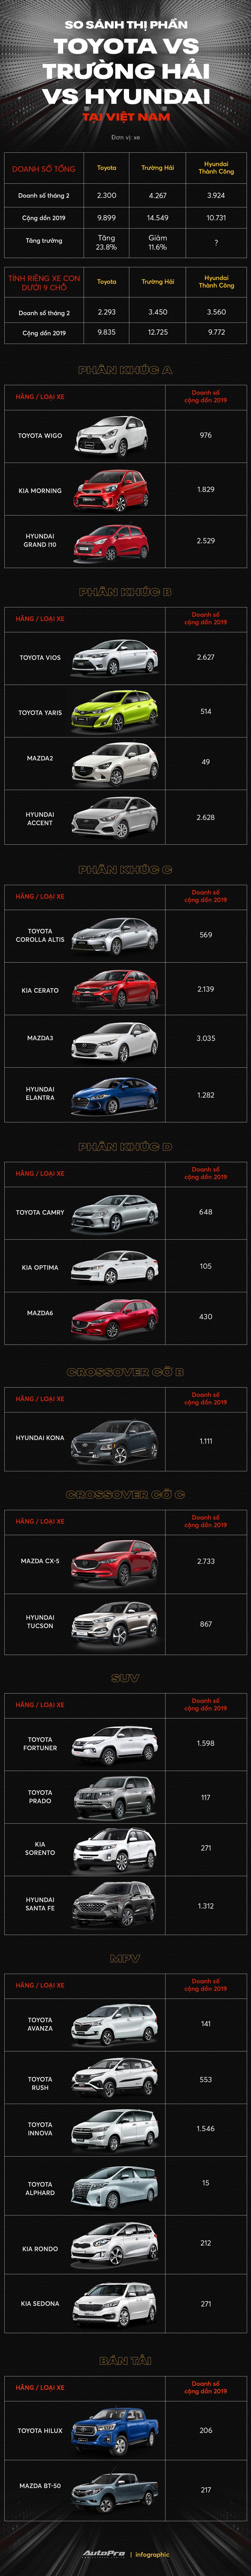 Hyundai bán vượt THACO, Toyota: Từ chỗ bị chê về chất lượng, xe Hàn lên ngôi át vía xe Nhật - Ảnh 1.